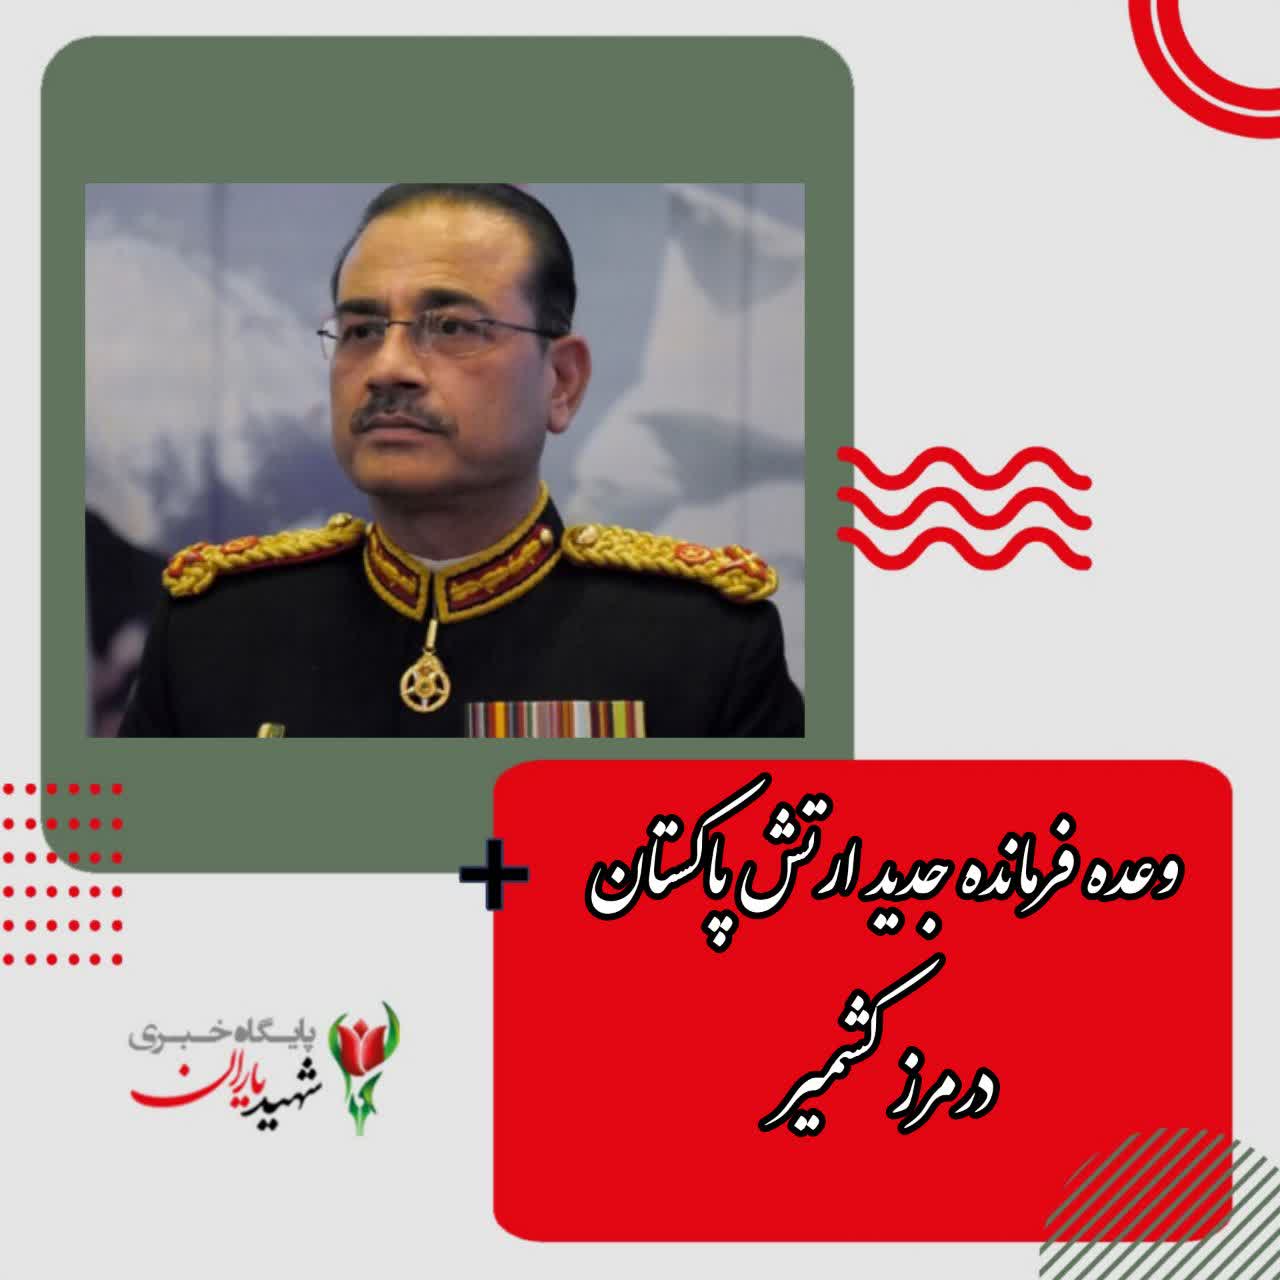 وعده فرمانده جدید ارتش پاکستان در مرز کشمیر